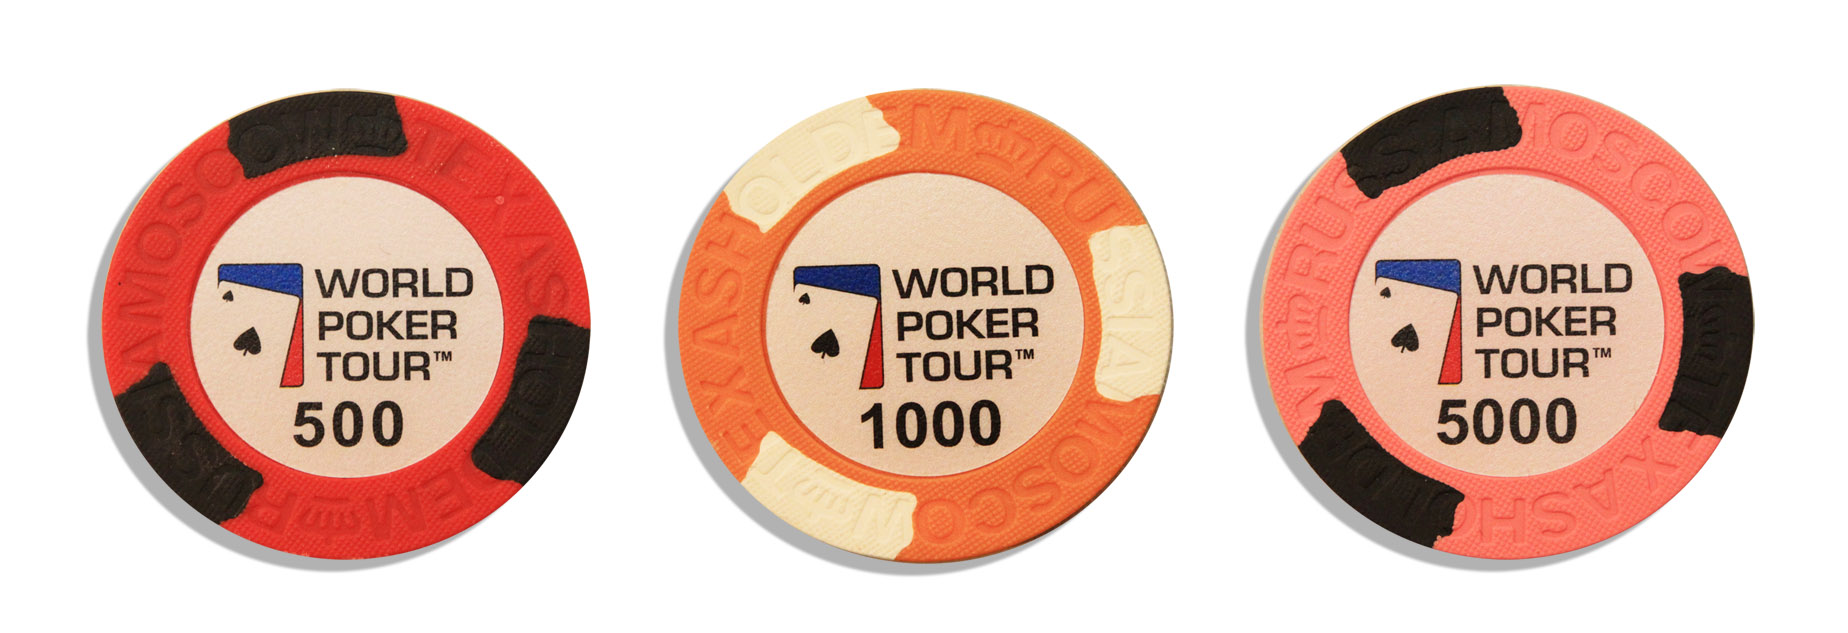 WPT фишки для покера (номиналы 500,1000 и 5000